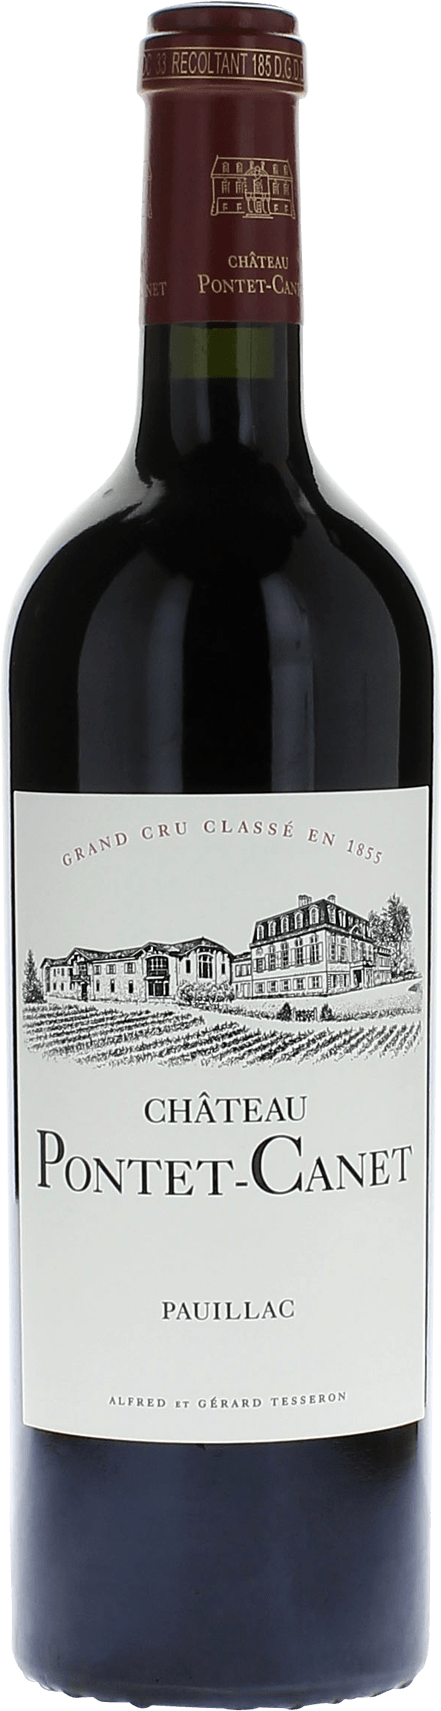 Pontet canet 1998 5me Grand cru class Pauillac, Bordeaux rouge